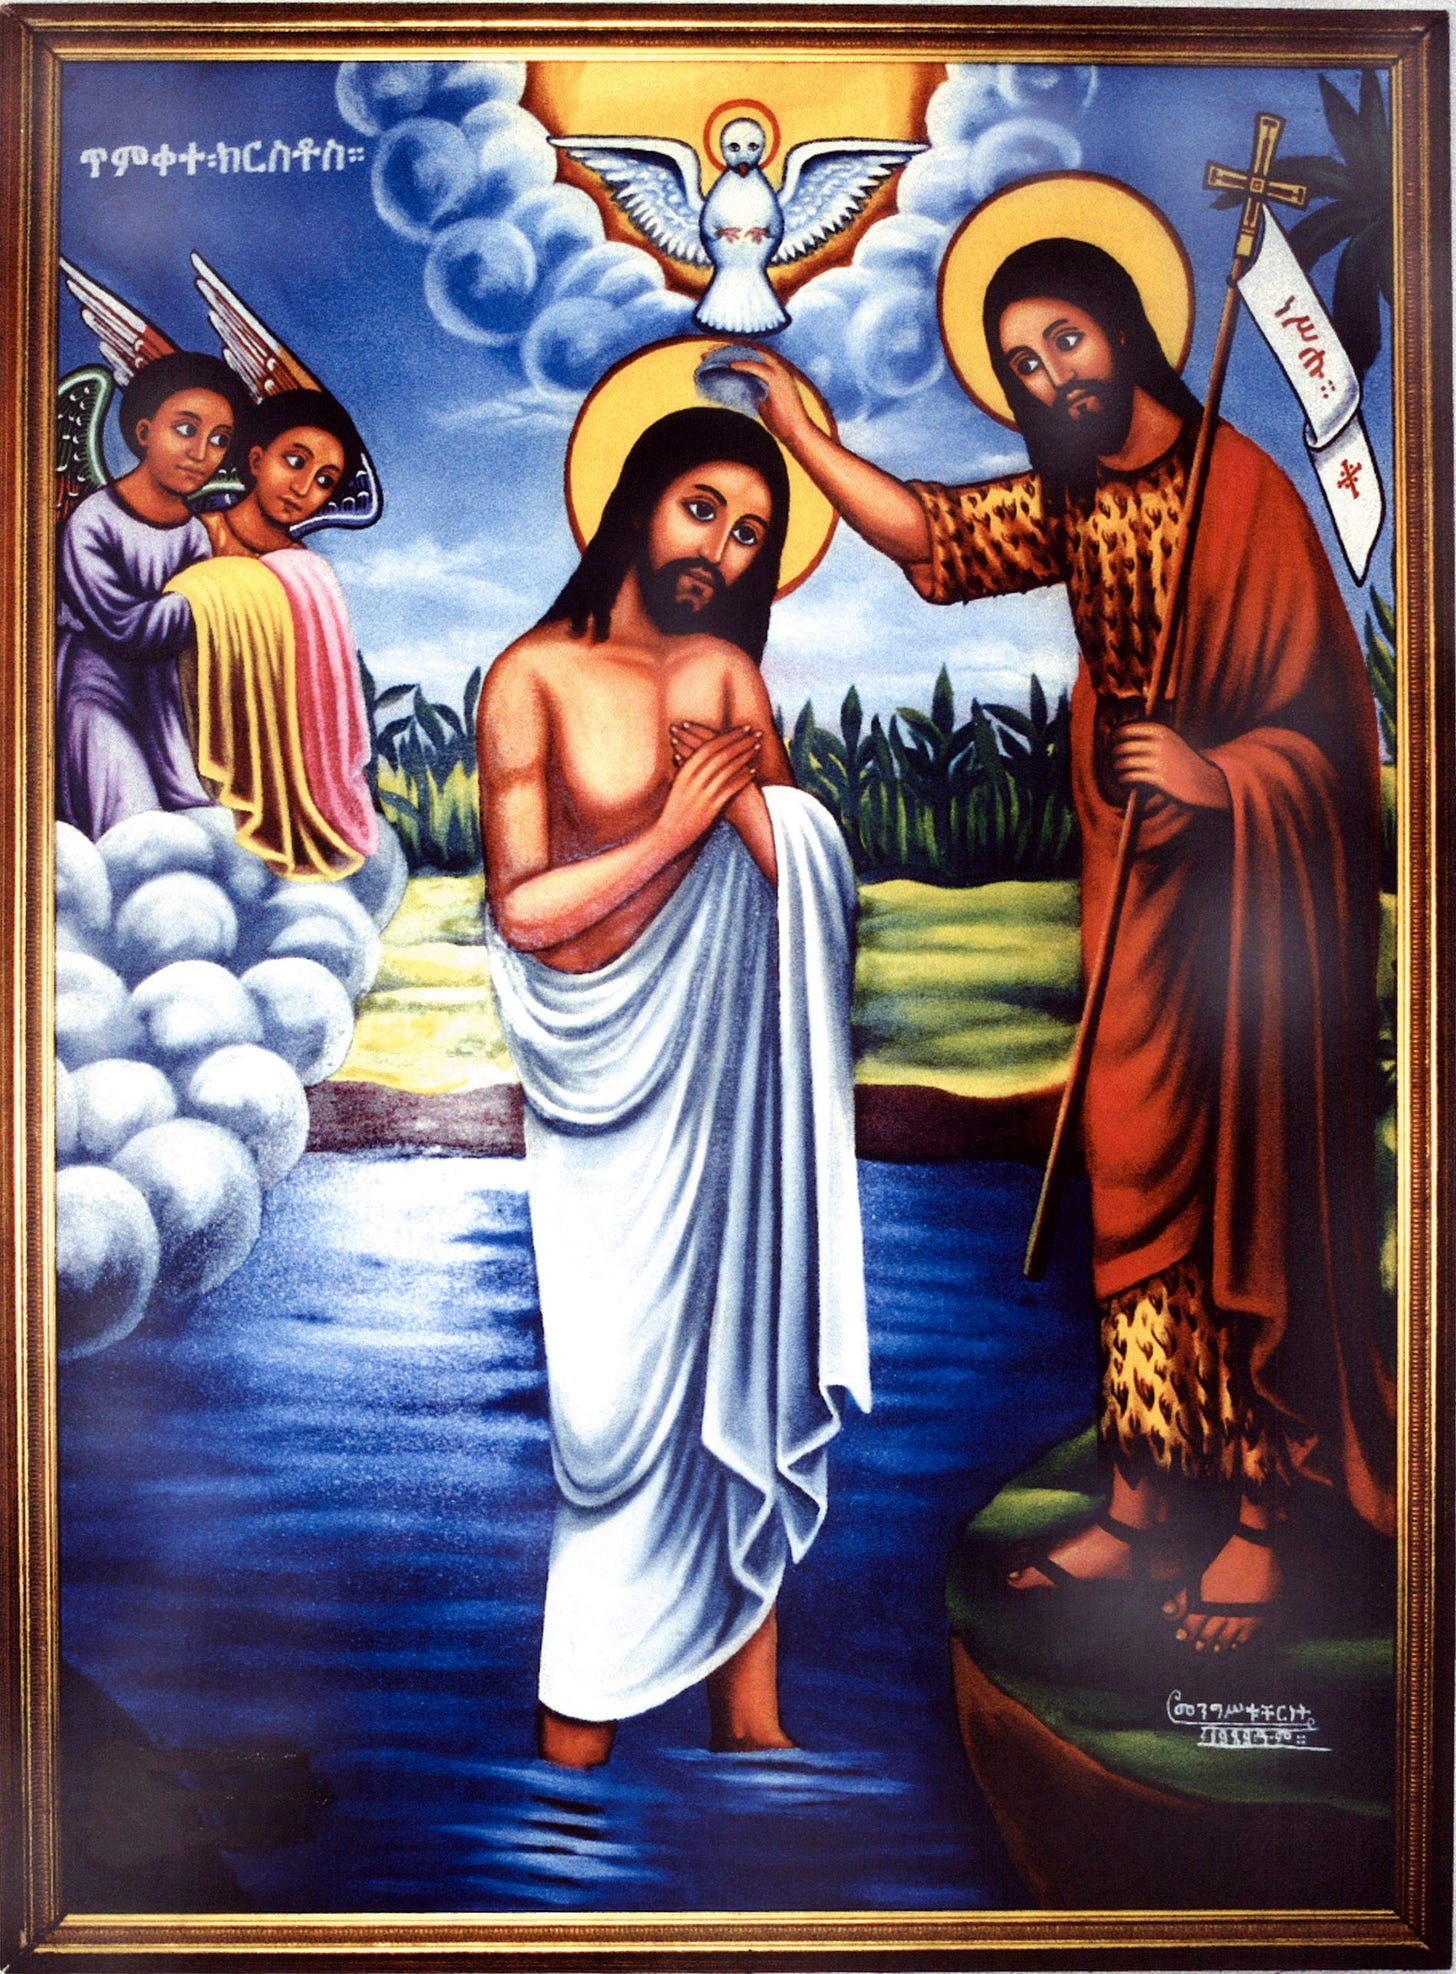 Mystery of the Baptism | በኢትዮጵያ ኦርቶዶክስ ተዋህዶ ደብረ ቅዱሳን ተክለሐይማኖት ቤተክርስትያን